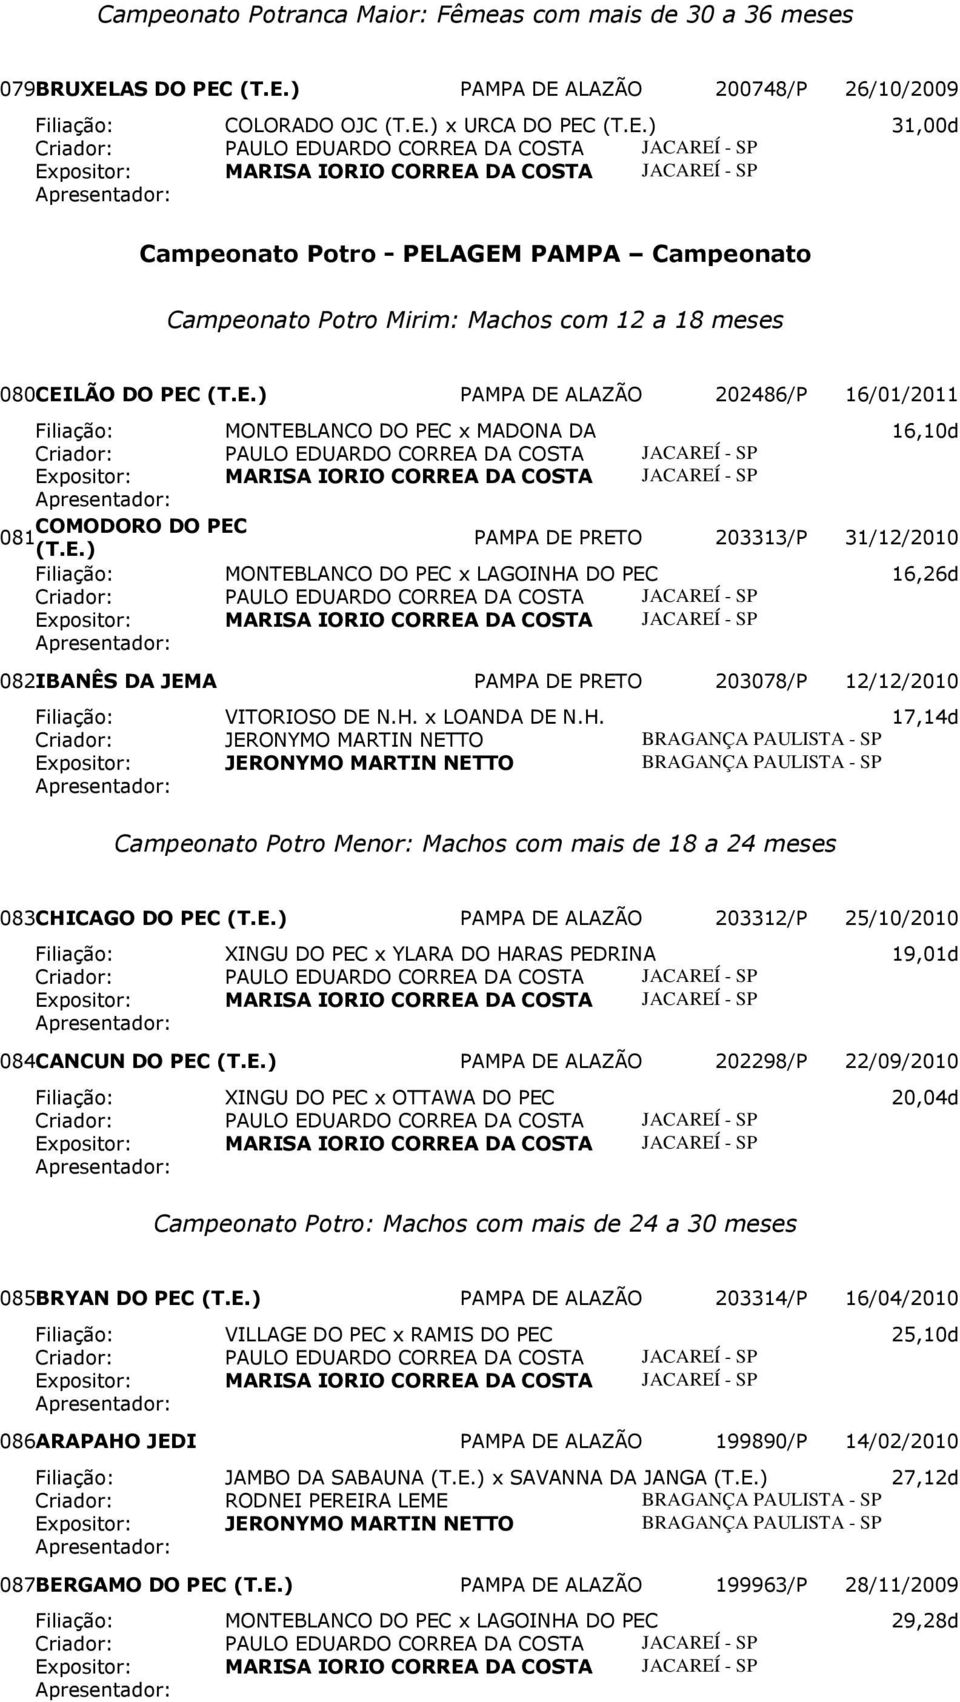 203313/P 31/12/2010 Filiação: MONTEBLANCO DO PEC x LAGOINHA